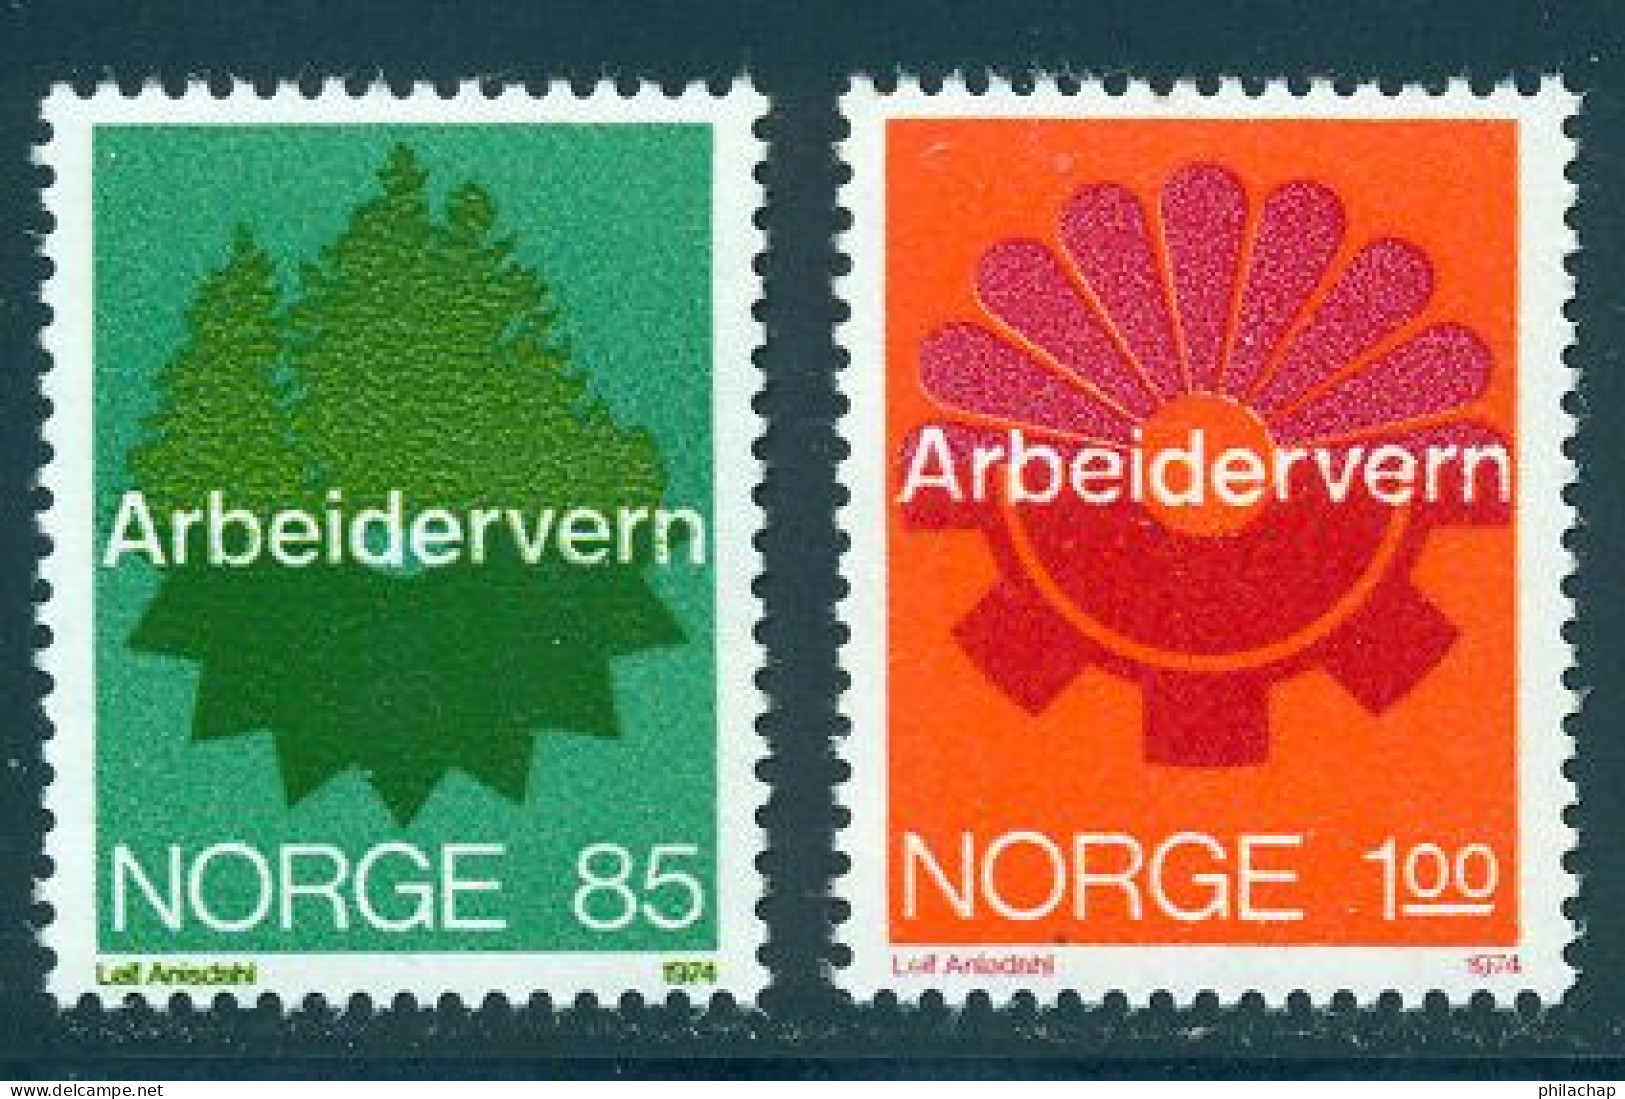 Norvege 1974 Yvert 641 / 642 ** TB - Neufs